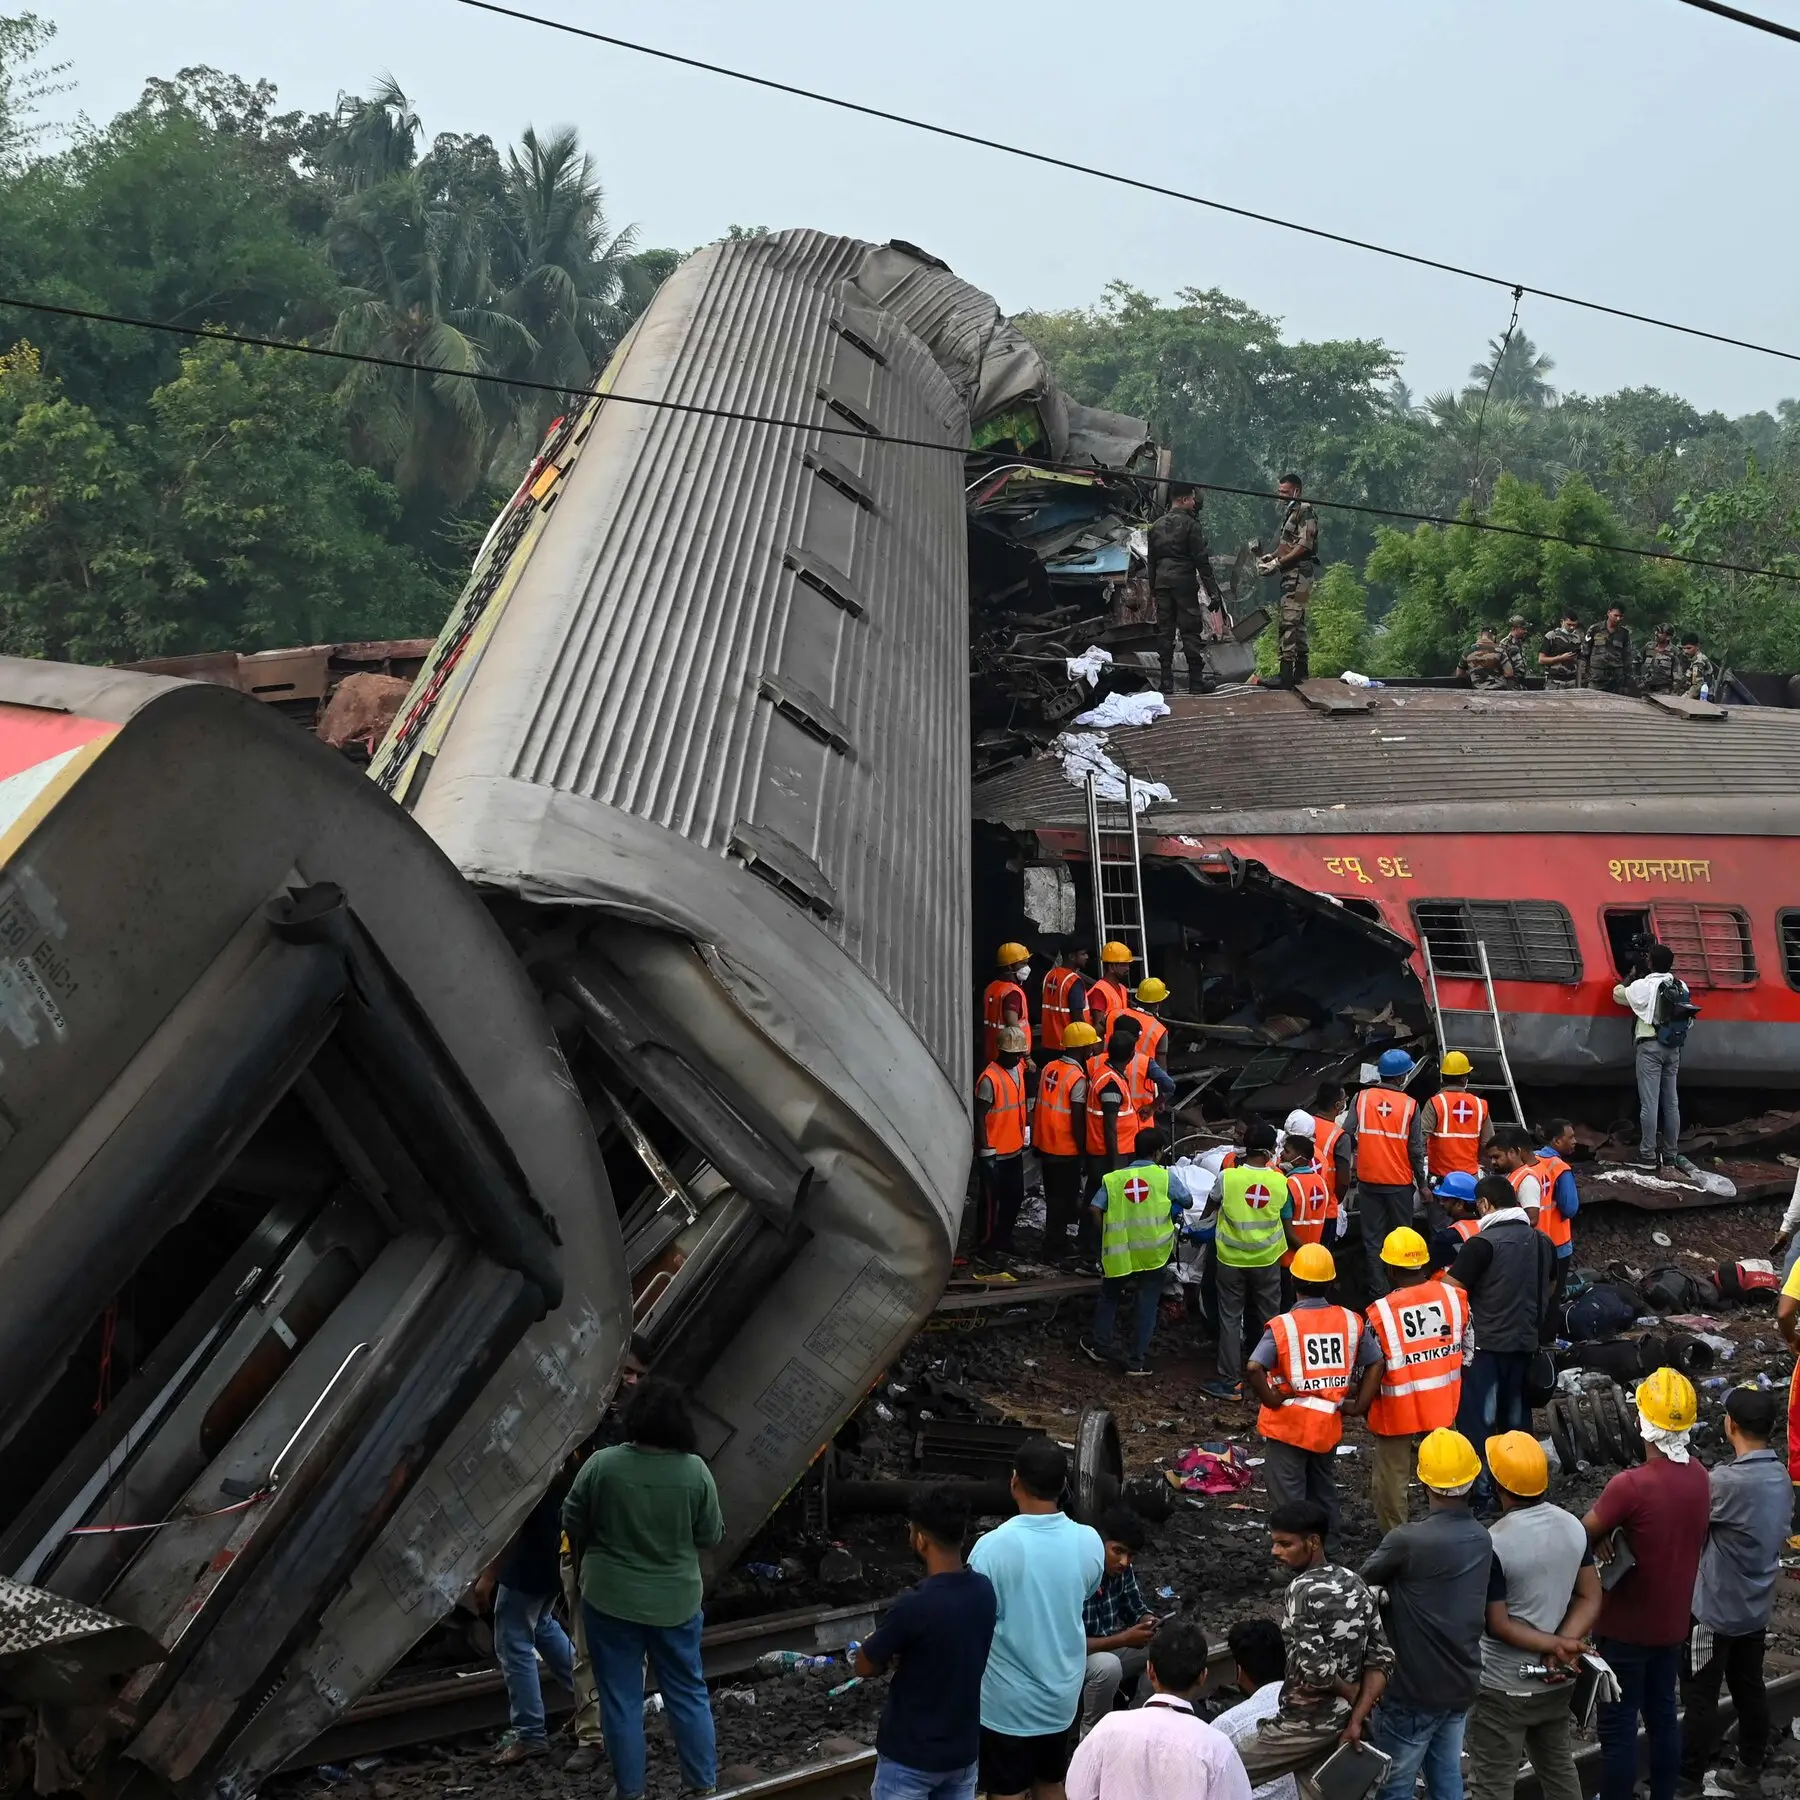 muertos en accidente de tren - Cuántas personas murieron en el trenazo